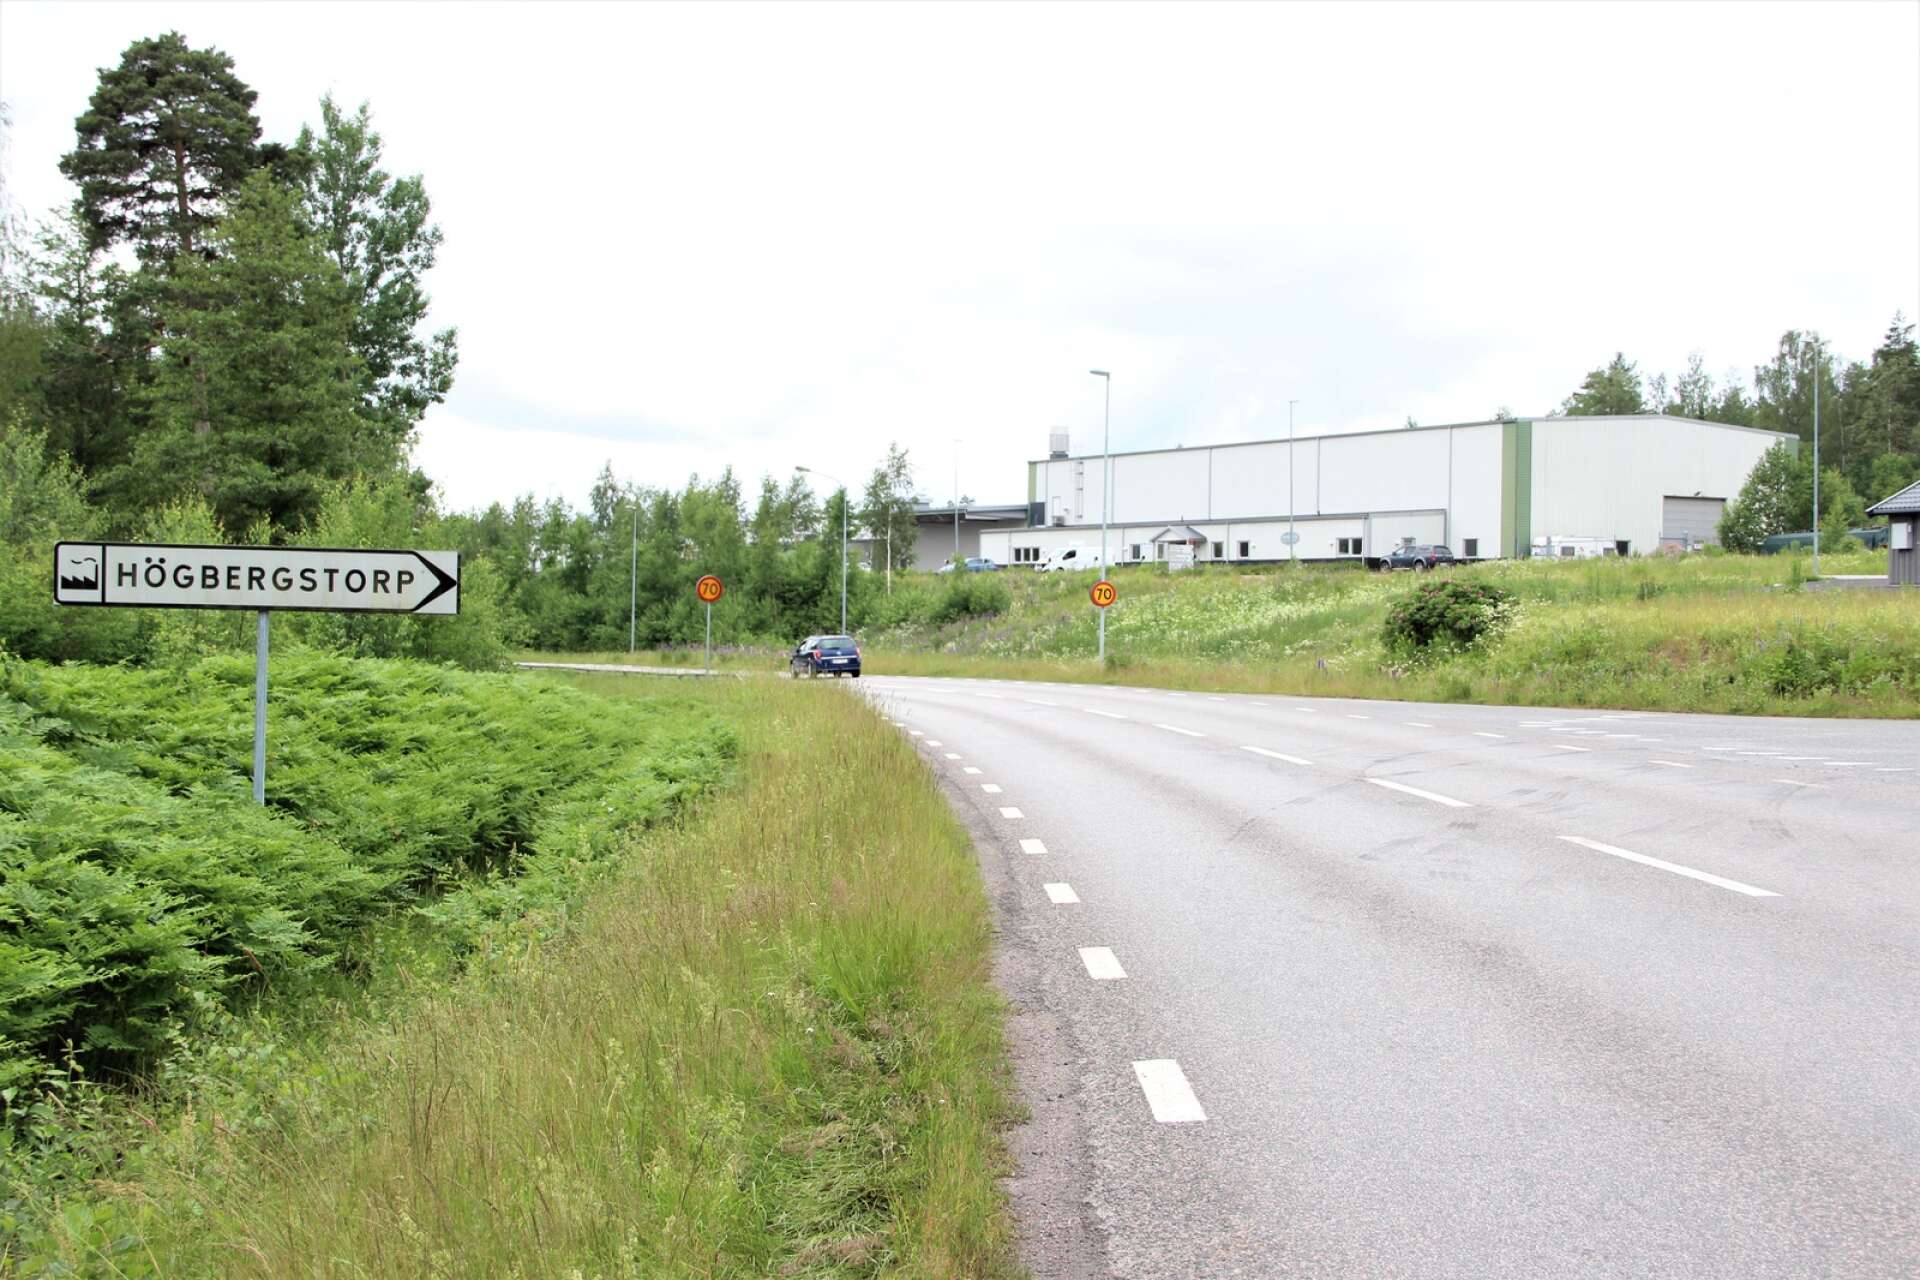 Behov finns att utöka Högbergstorps industriområde i Degerfors och nu ska konsulter anlitas för att se vad som behövs för att detaljplanera området.